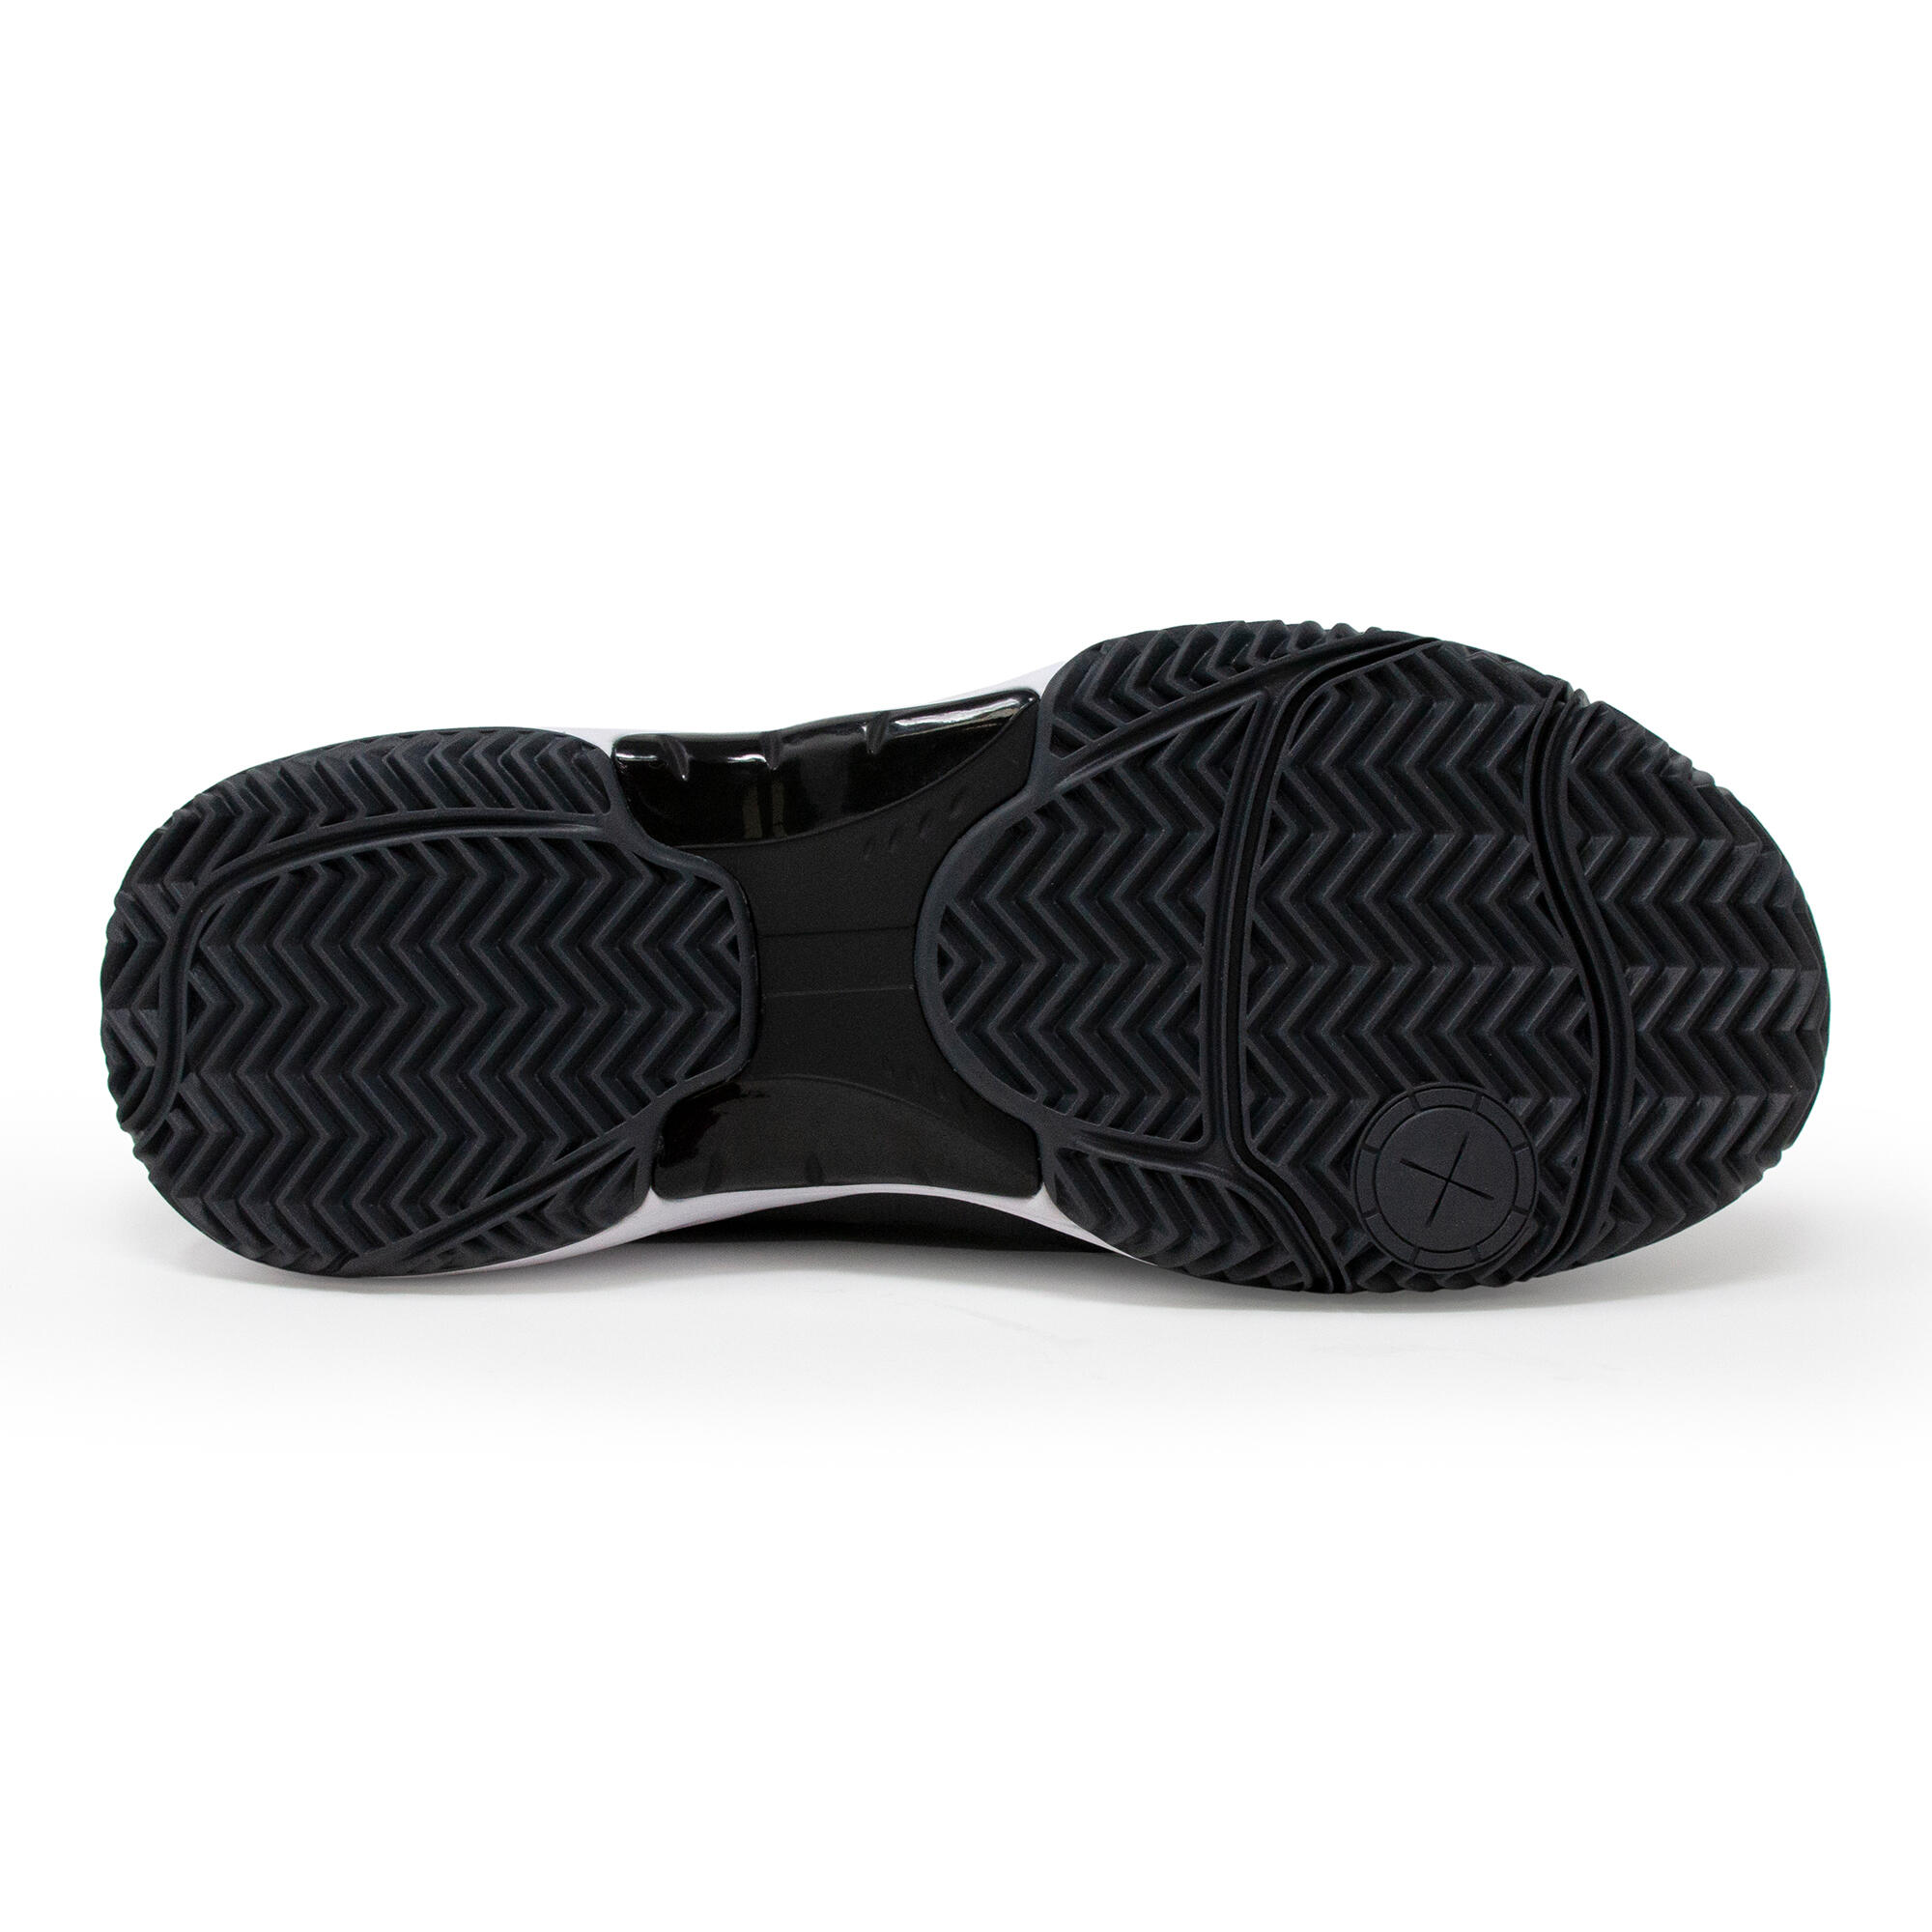 Men's Padel Shoes PS 500 - Grey/Black 8/9